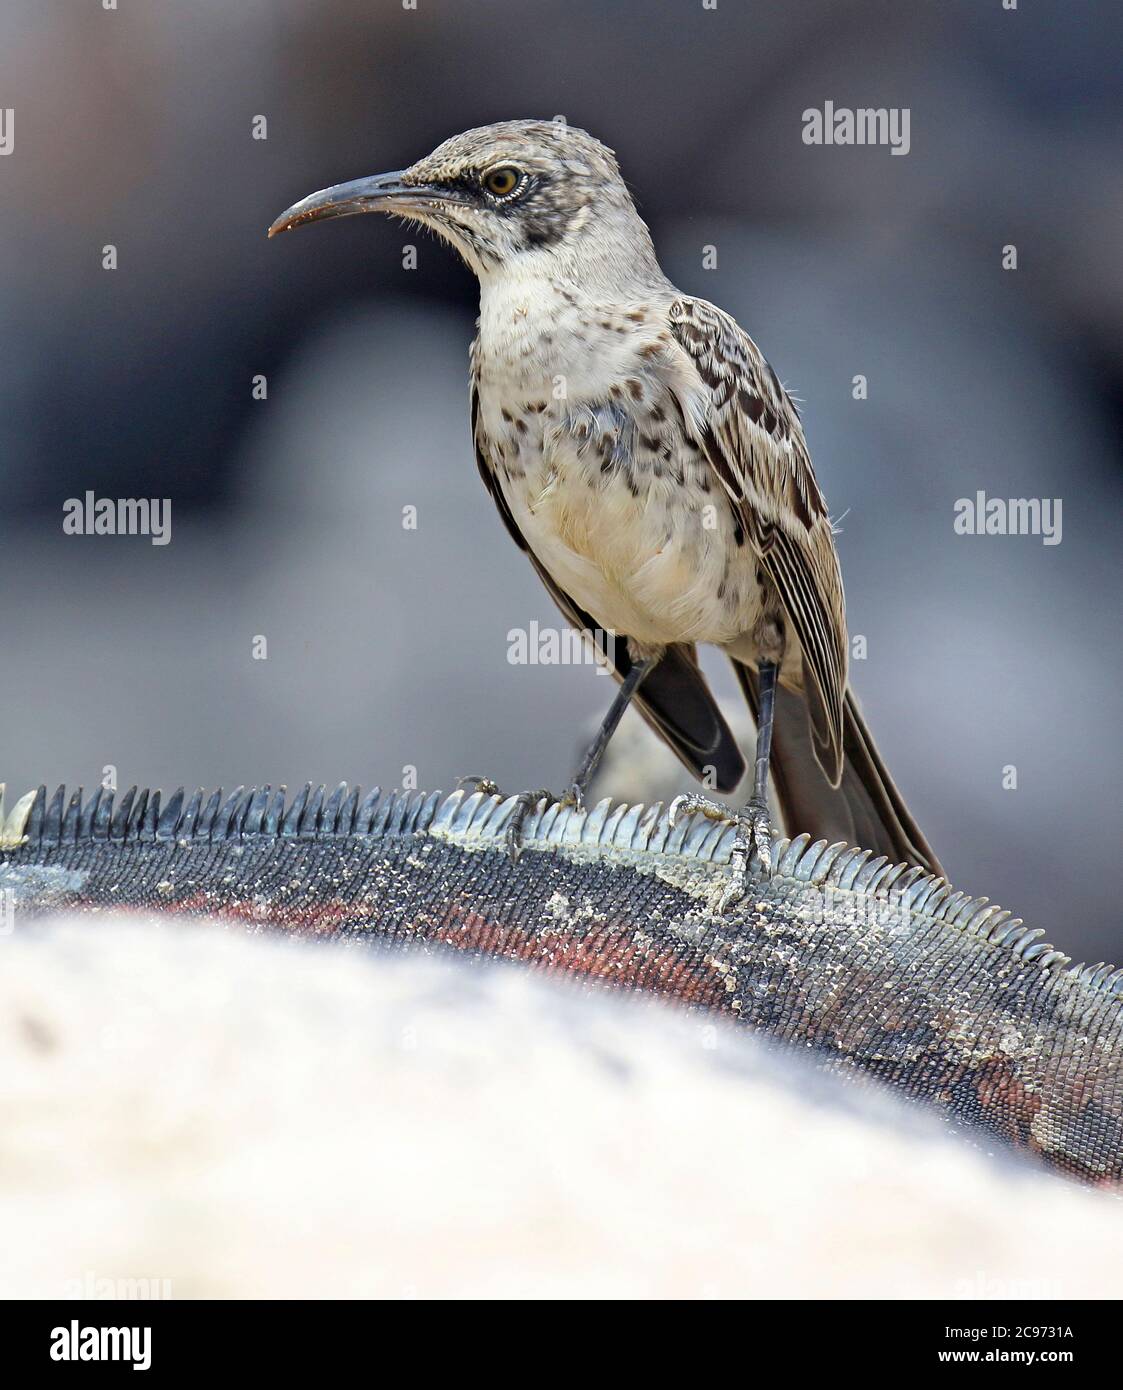 Hood mockingbird, Espanola mockingbird (Nesomimus parvulus macdonaldi, Nesomimus macdonaldi), recherche sur la plage, Équateur, Îles Galapagos, Espanola Banque D'Images